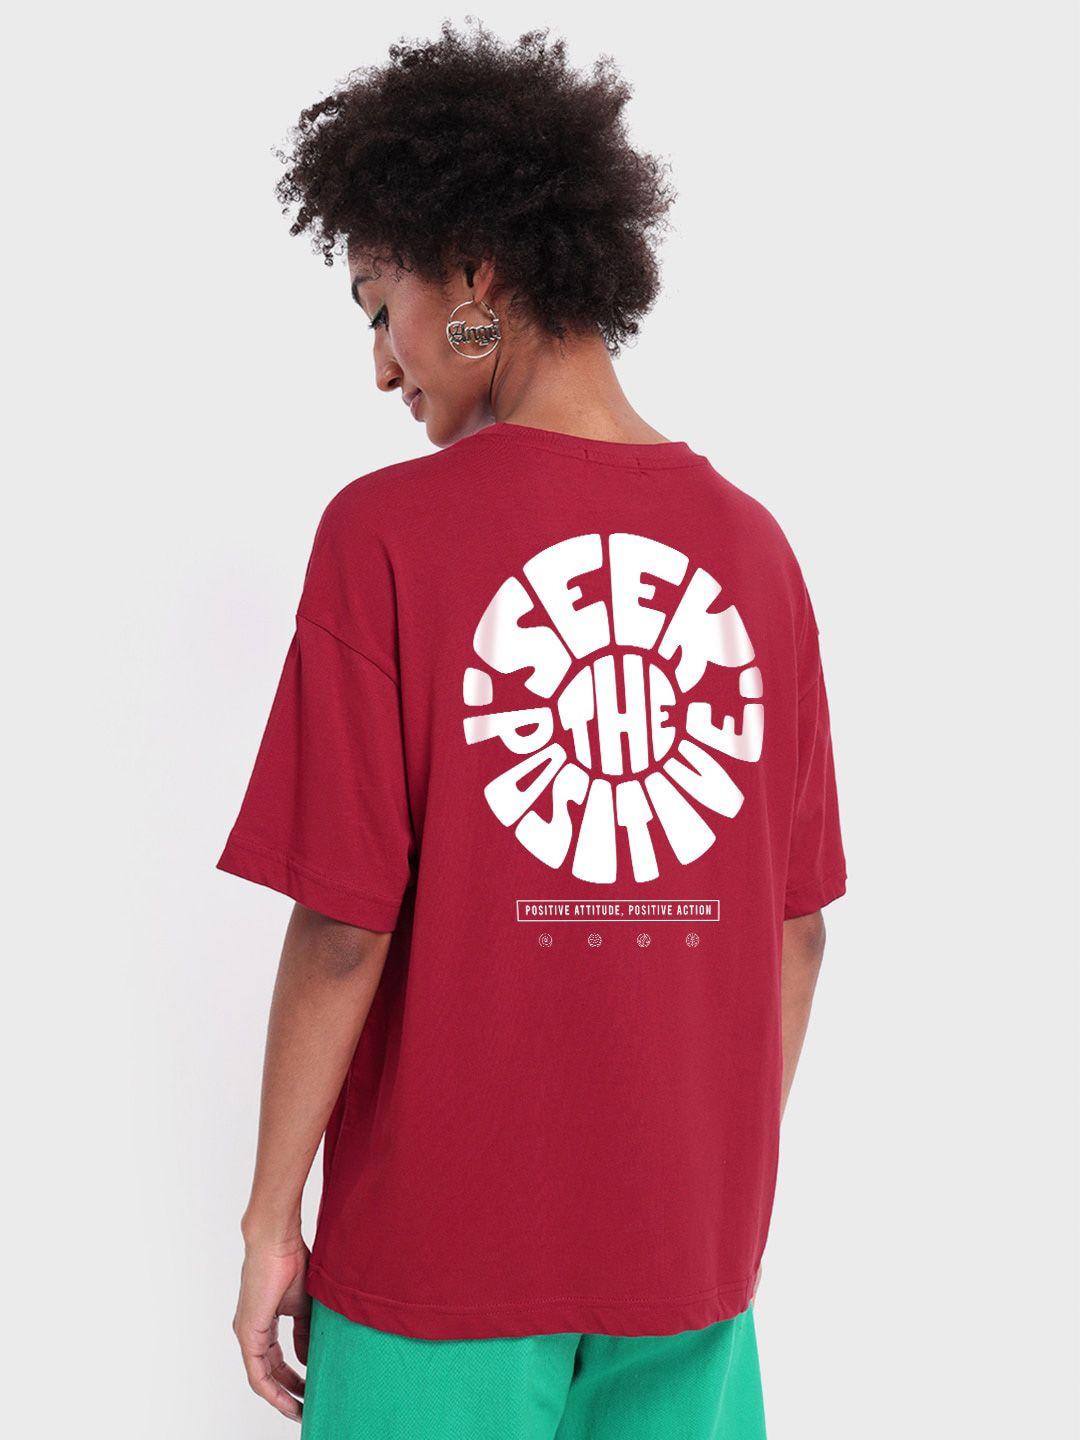 bewakoof-typography-printed-oversized-cotton-t-shirt